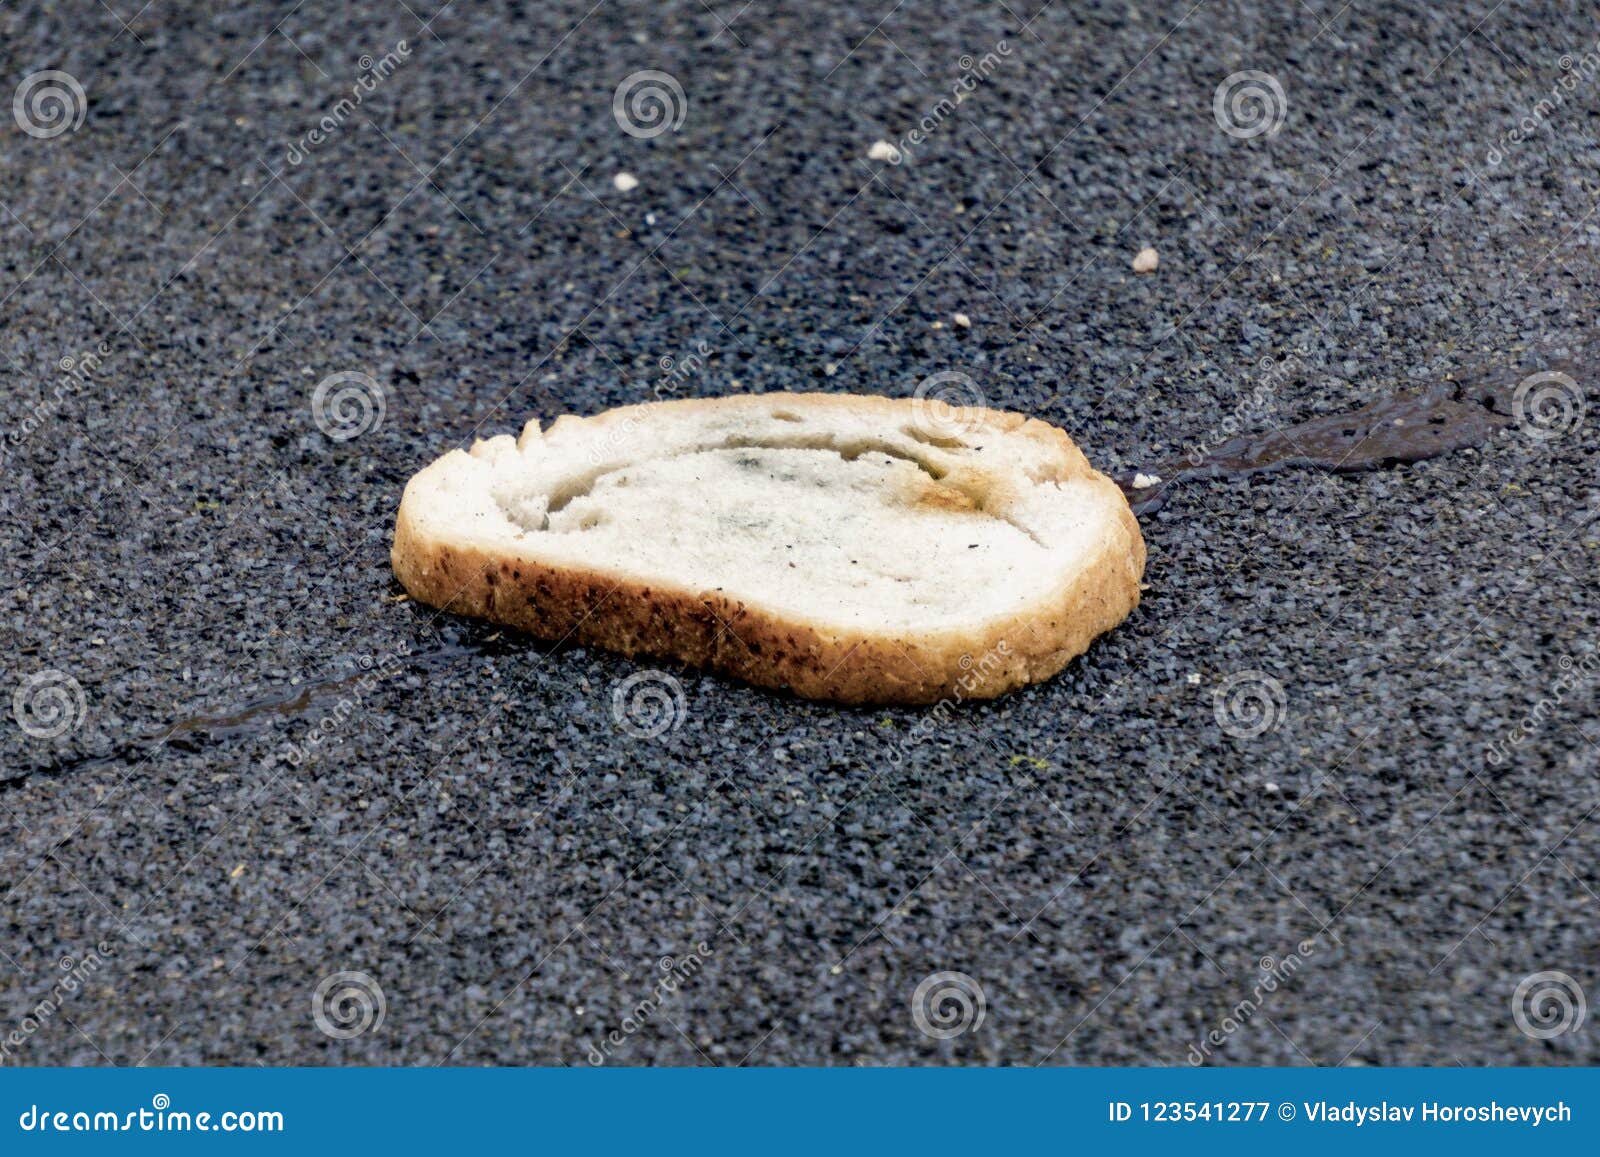 Кидать хлеб. Кусок хлеба на столе. Хлеб лежит на земле. Крошки хлеба на асфальте. Хлеб валяется.